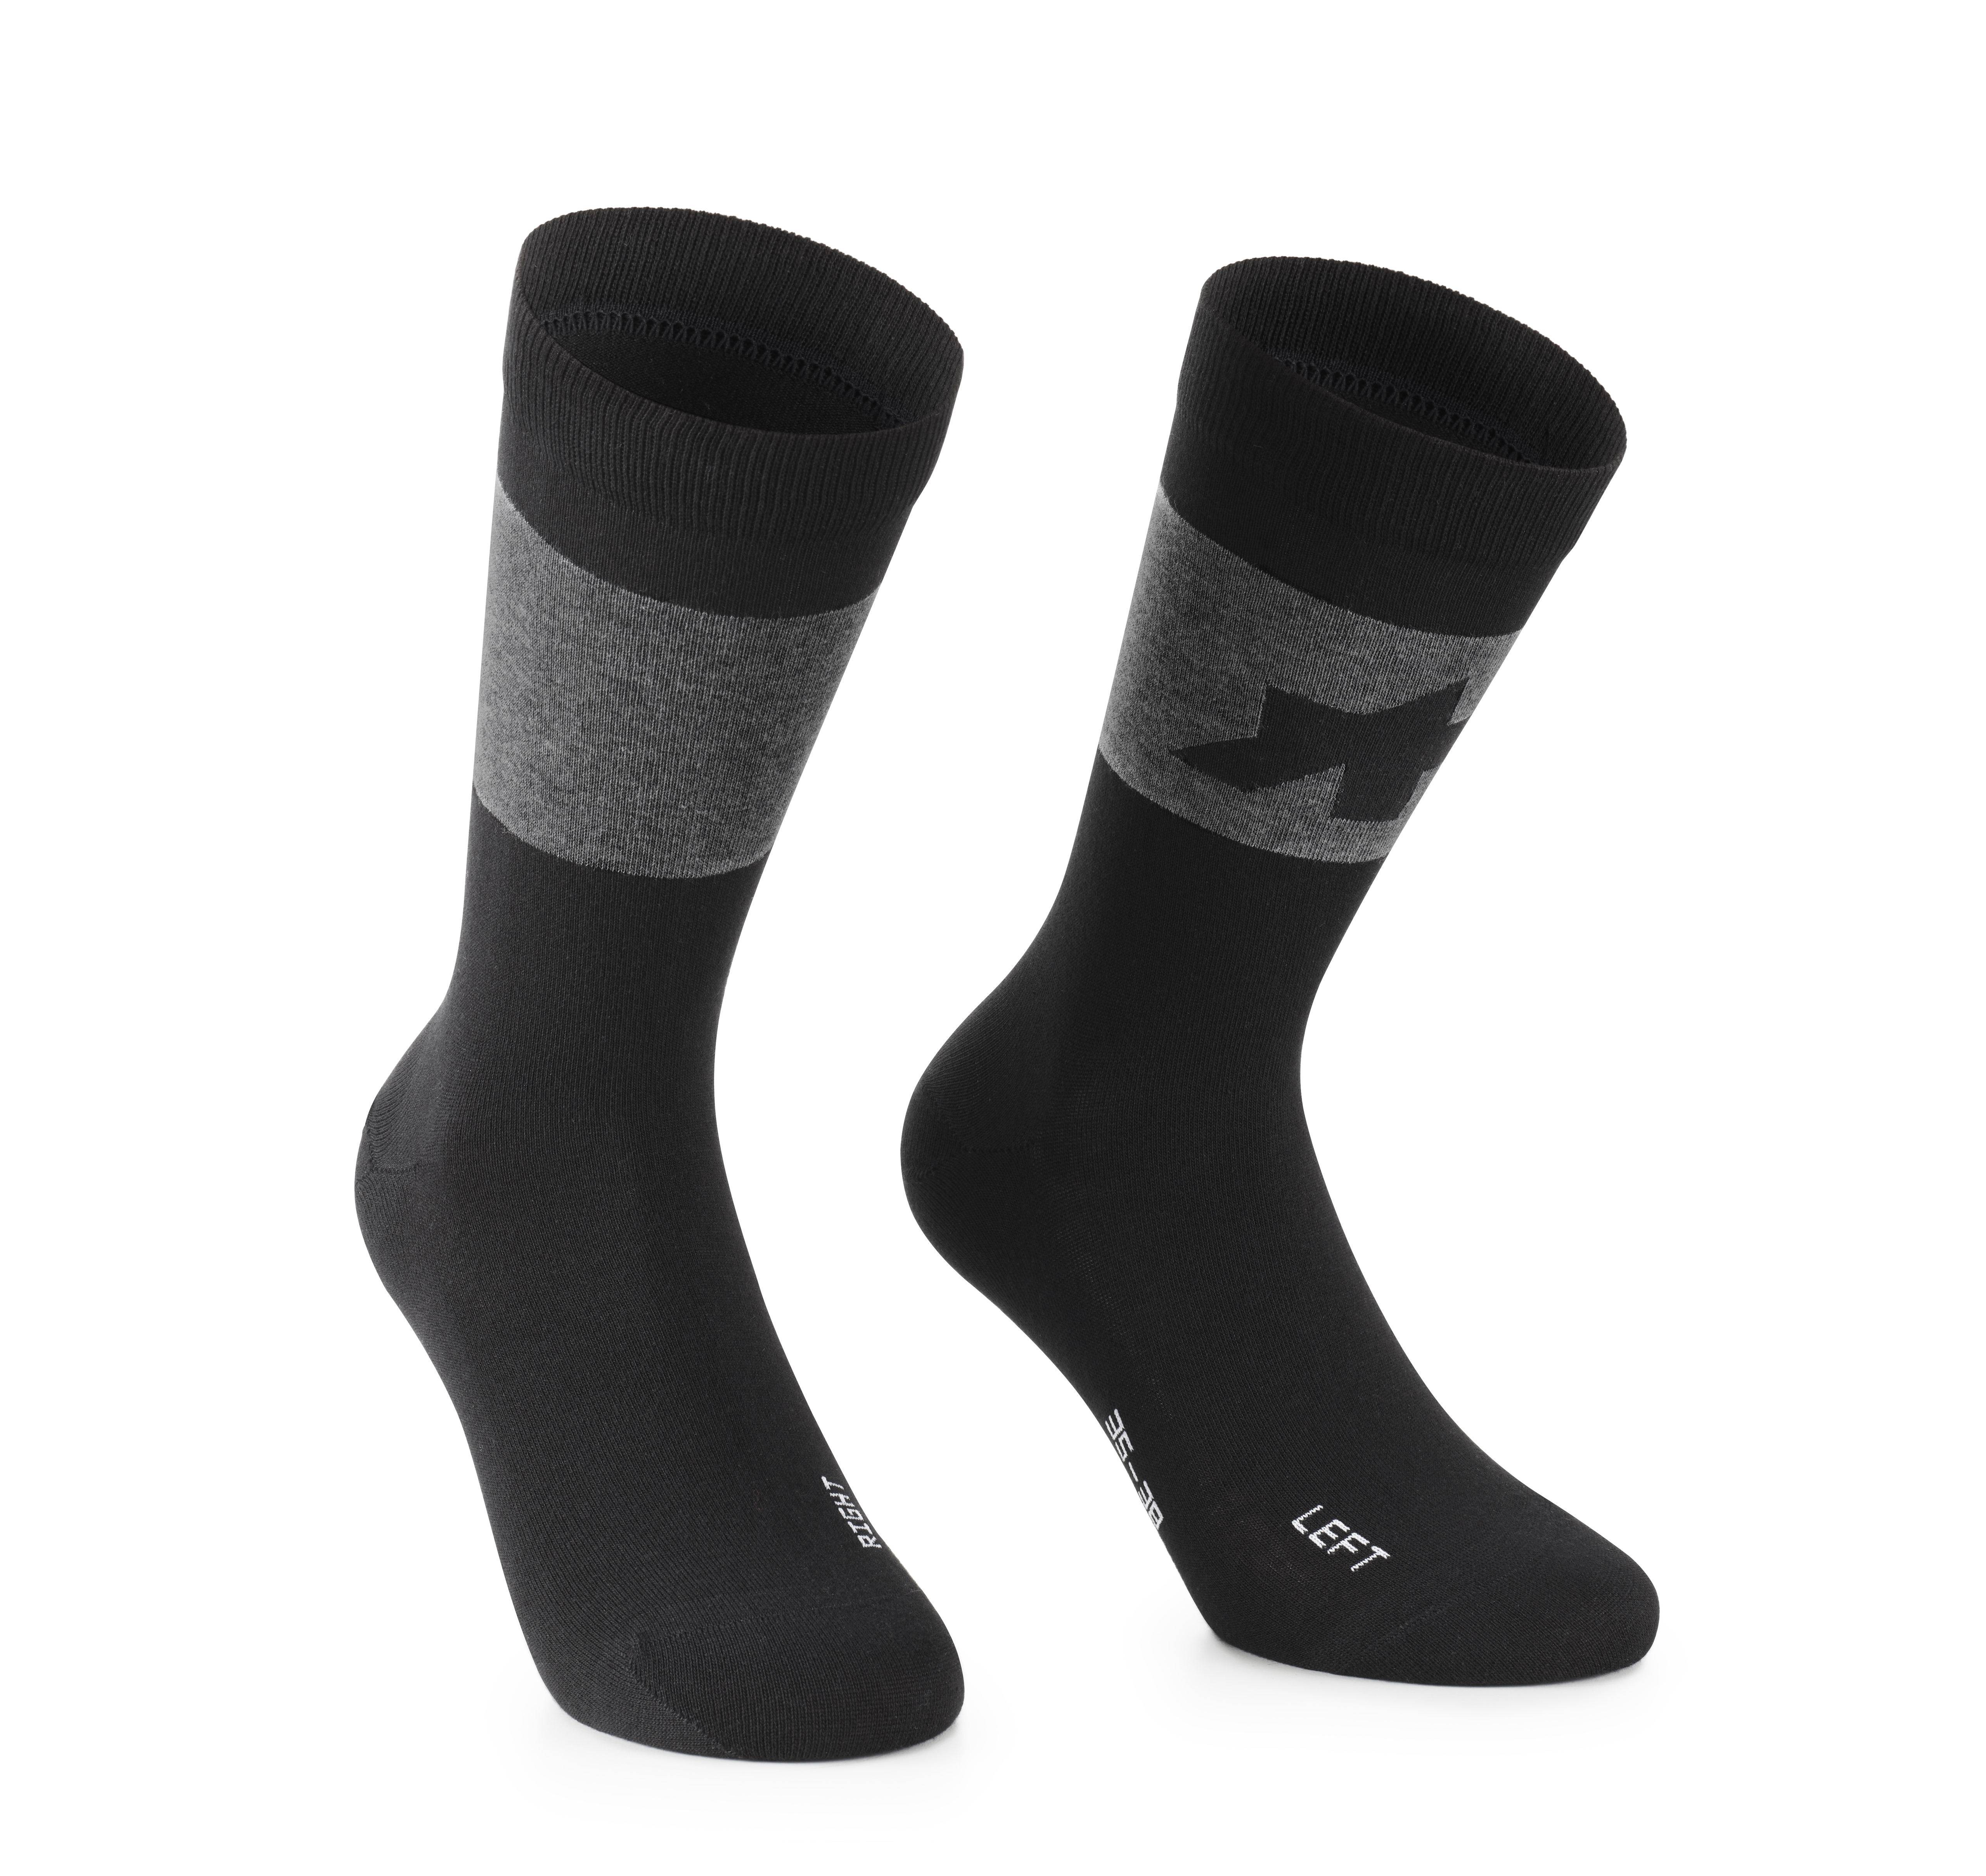 Носки ASSOS Signature Socks Evo, мужские, черные, I/40-43